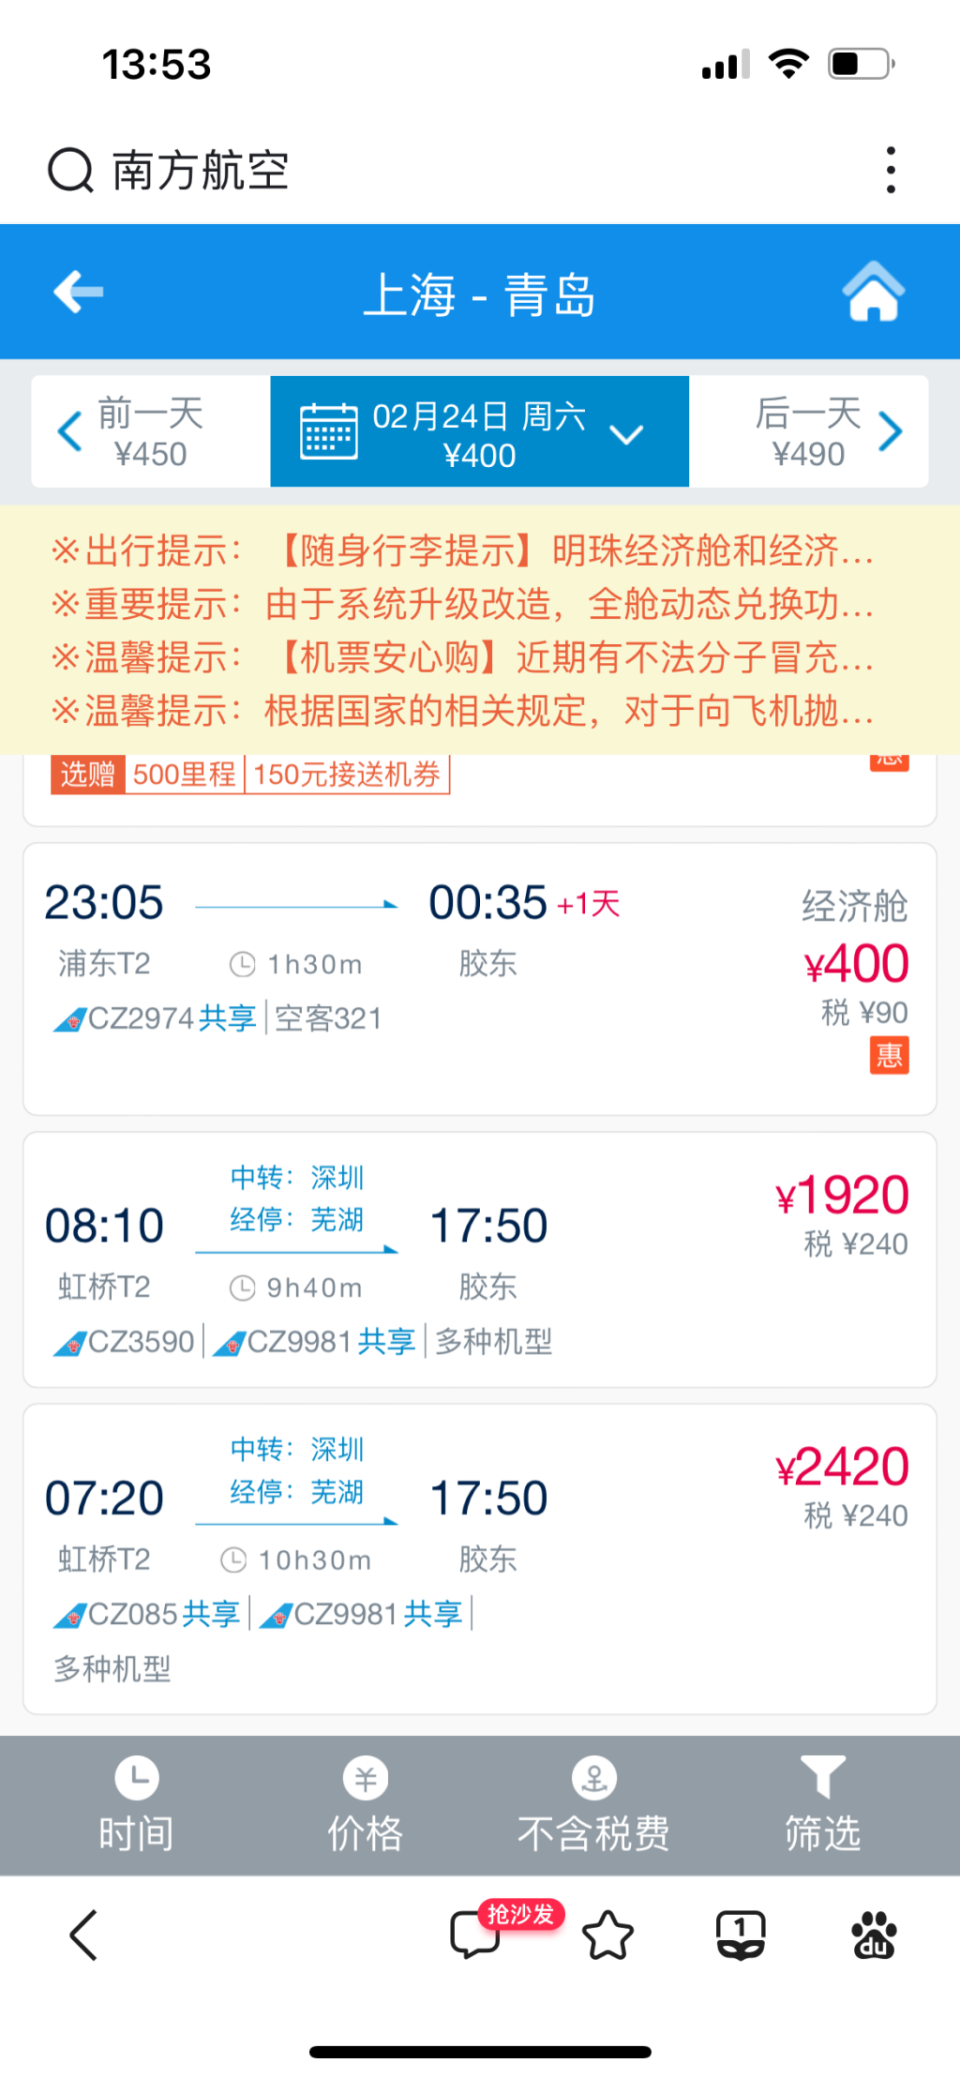 半岛调查丨上海飞青岛只要14元?冲上热搜的超低价机票真的能买到吗?